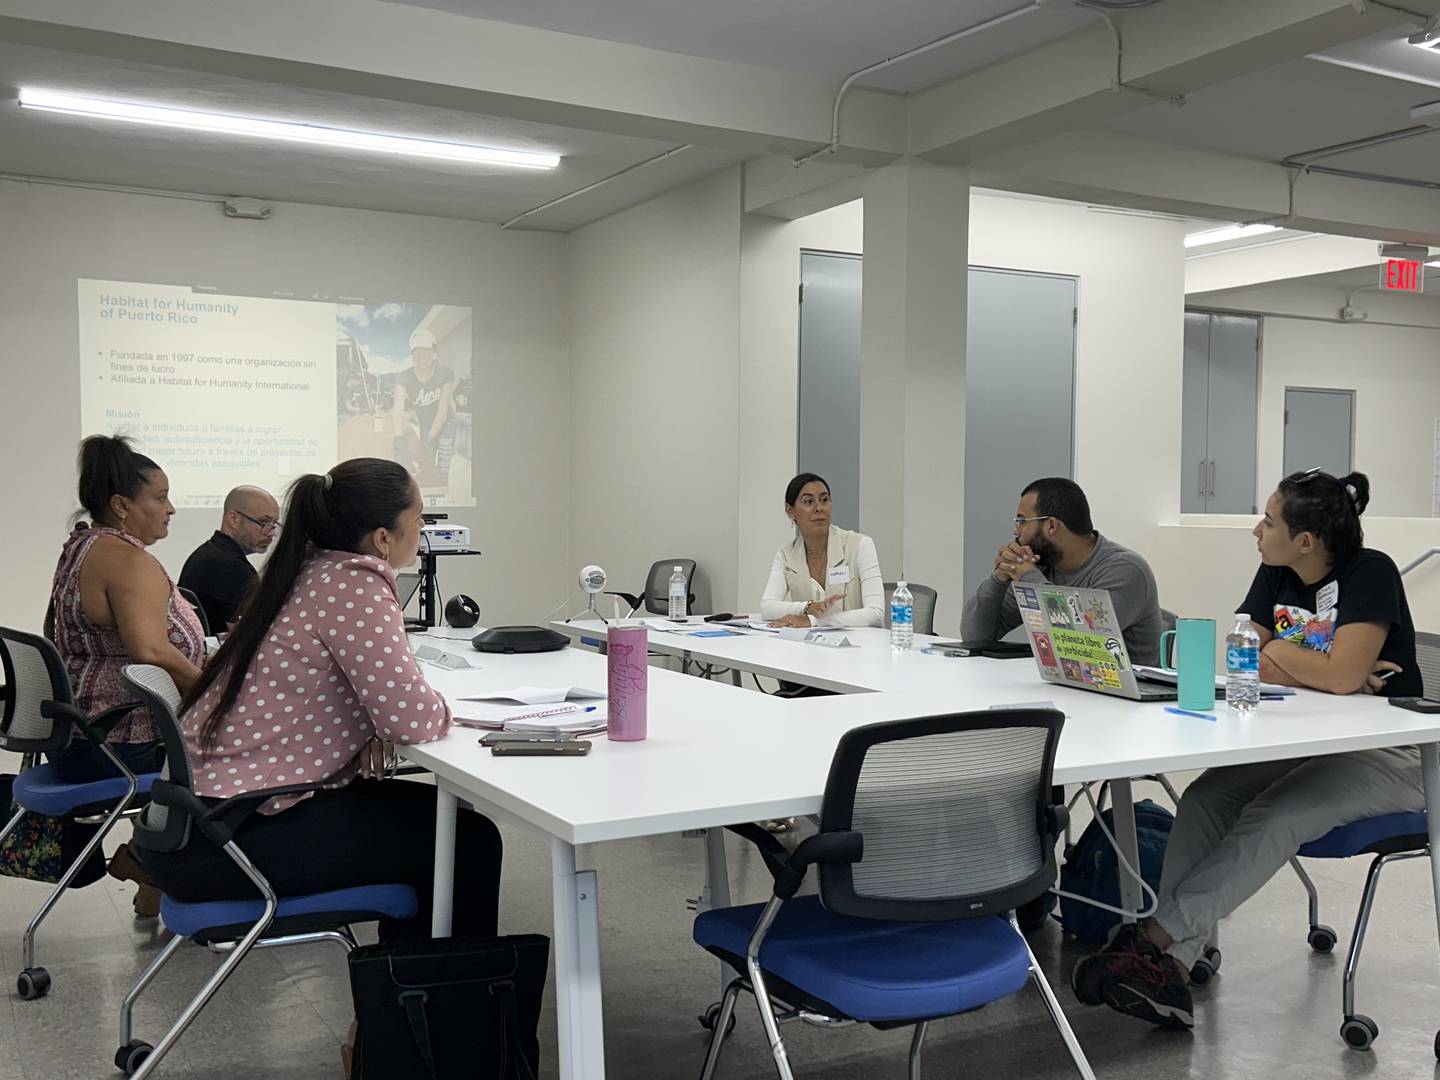 Grupo focal de representantes comunitarios convocados por Habitat for Humanity of Puerto Rico para discutir el manual para la elaboración de una escritura de fideicomiso comunitario de tierras en Puerto Rico.